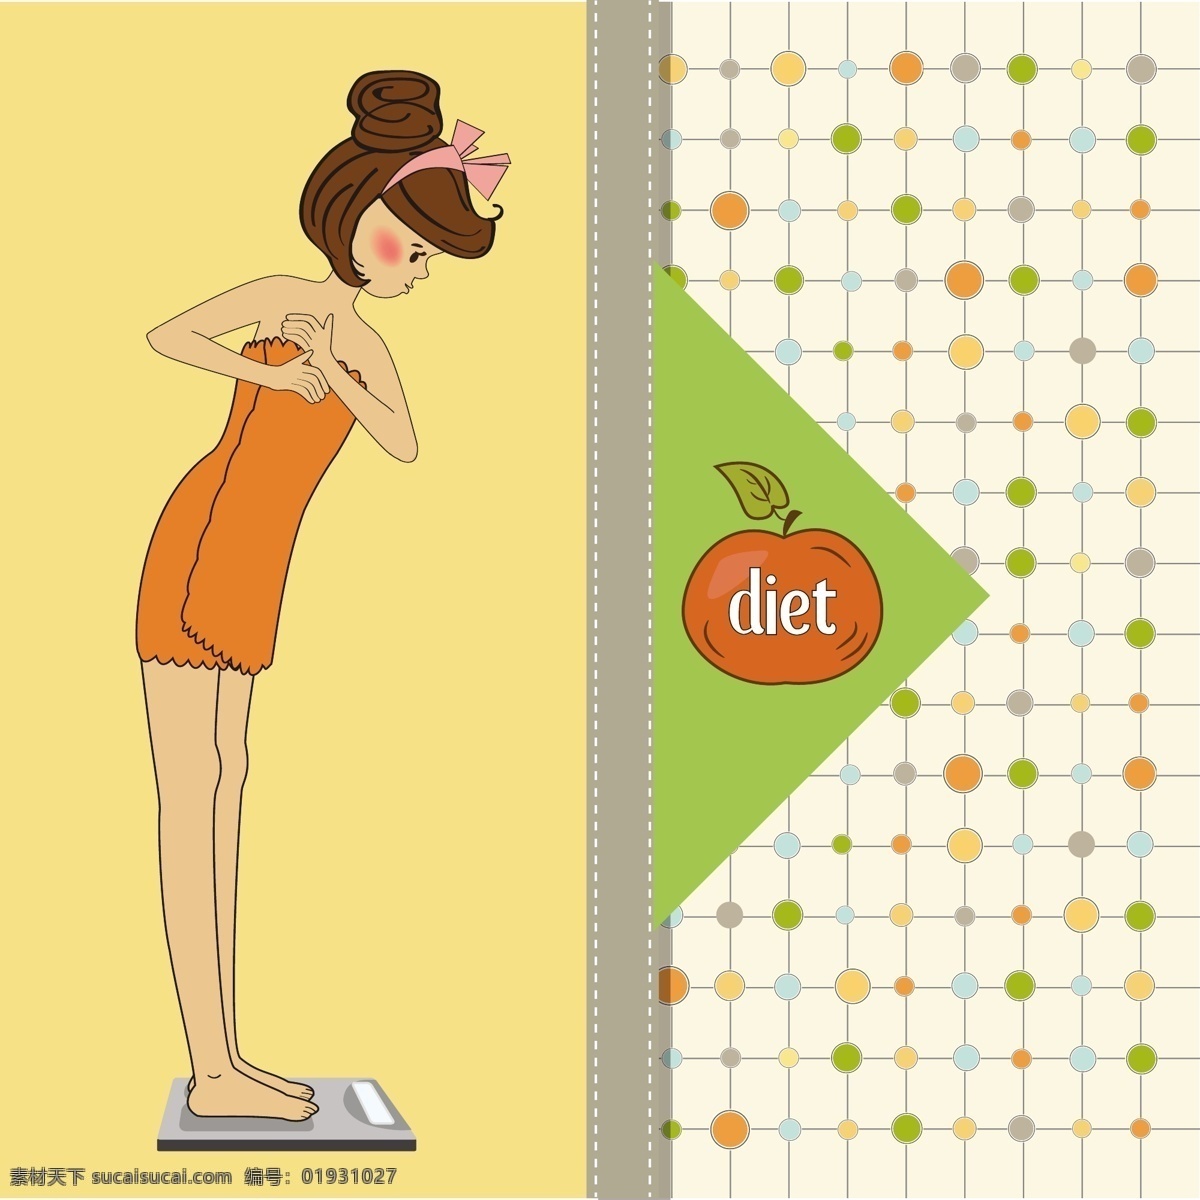 女性健康 生活方式 说明 食品 健康 丰富多彩 剪贴簿 表 插图 体重 饮食 健康食品 星罗棋布 缝 垂直 剪贴 健康饮食 色 黄色